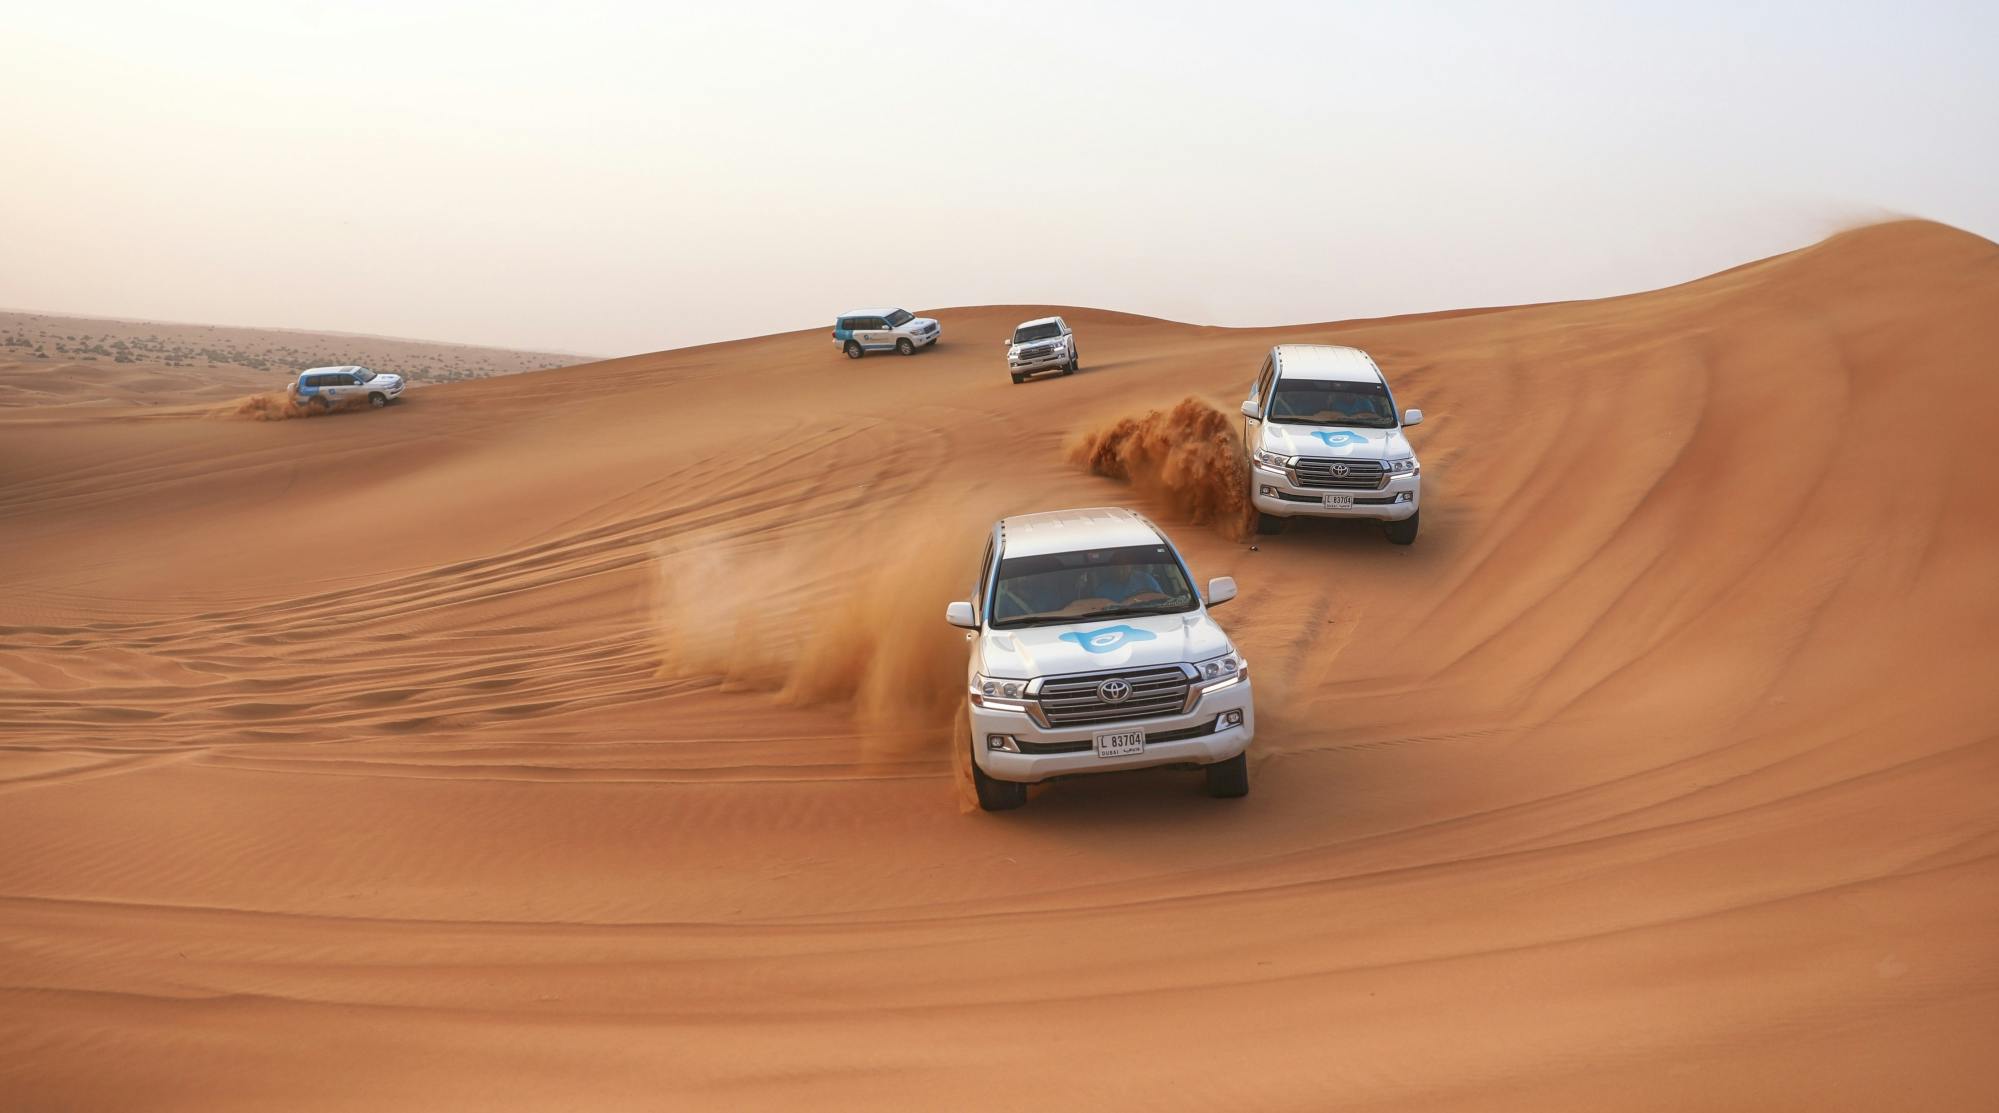 Safari matinal no deserto de Dubai com mergulho nas dunas, sandboard e passeio de camelo